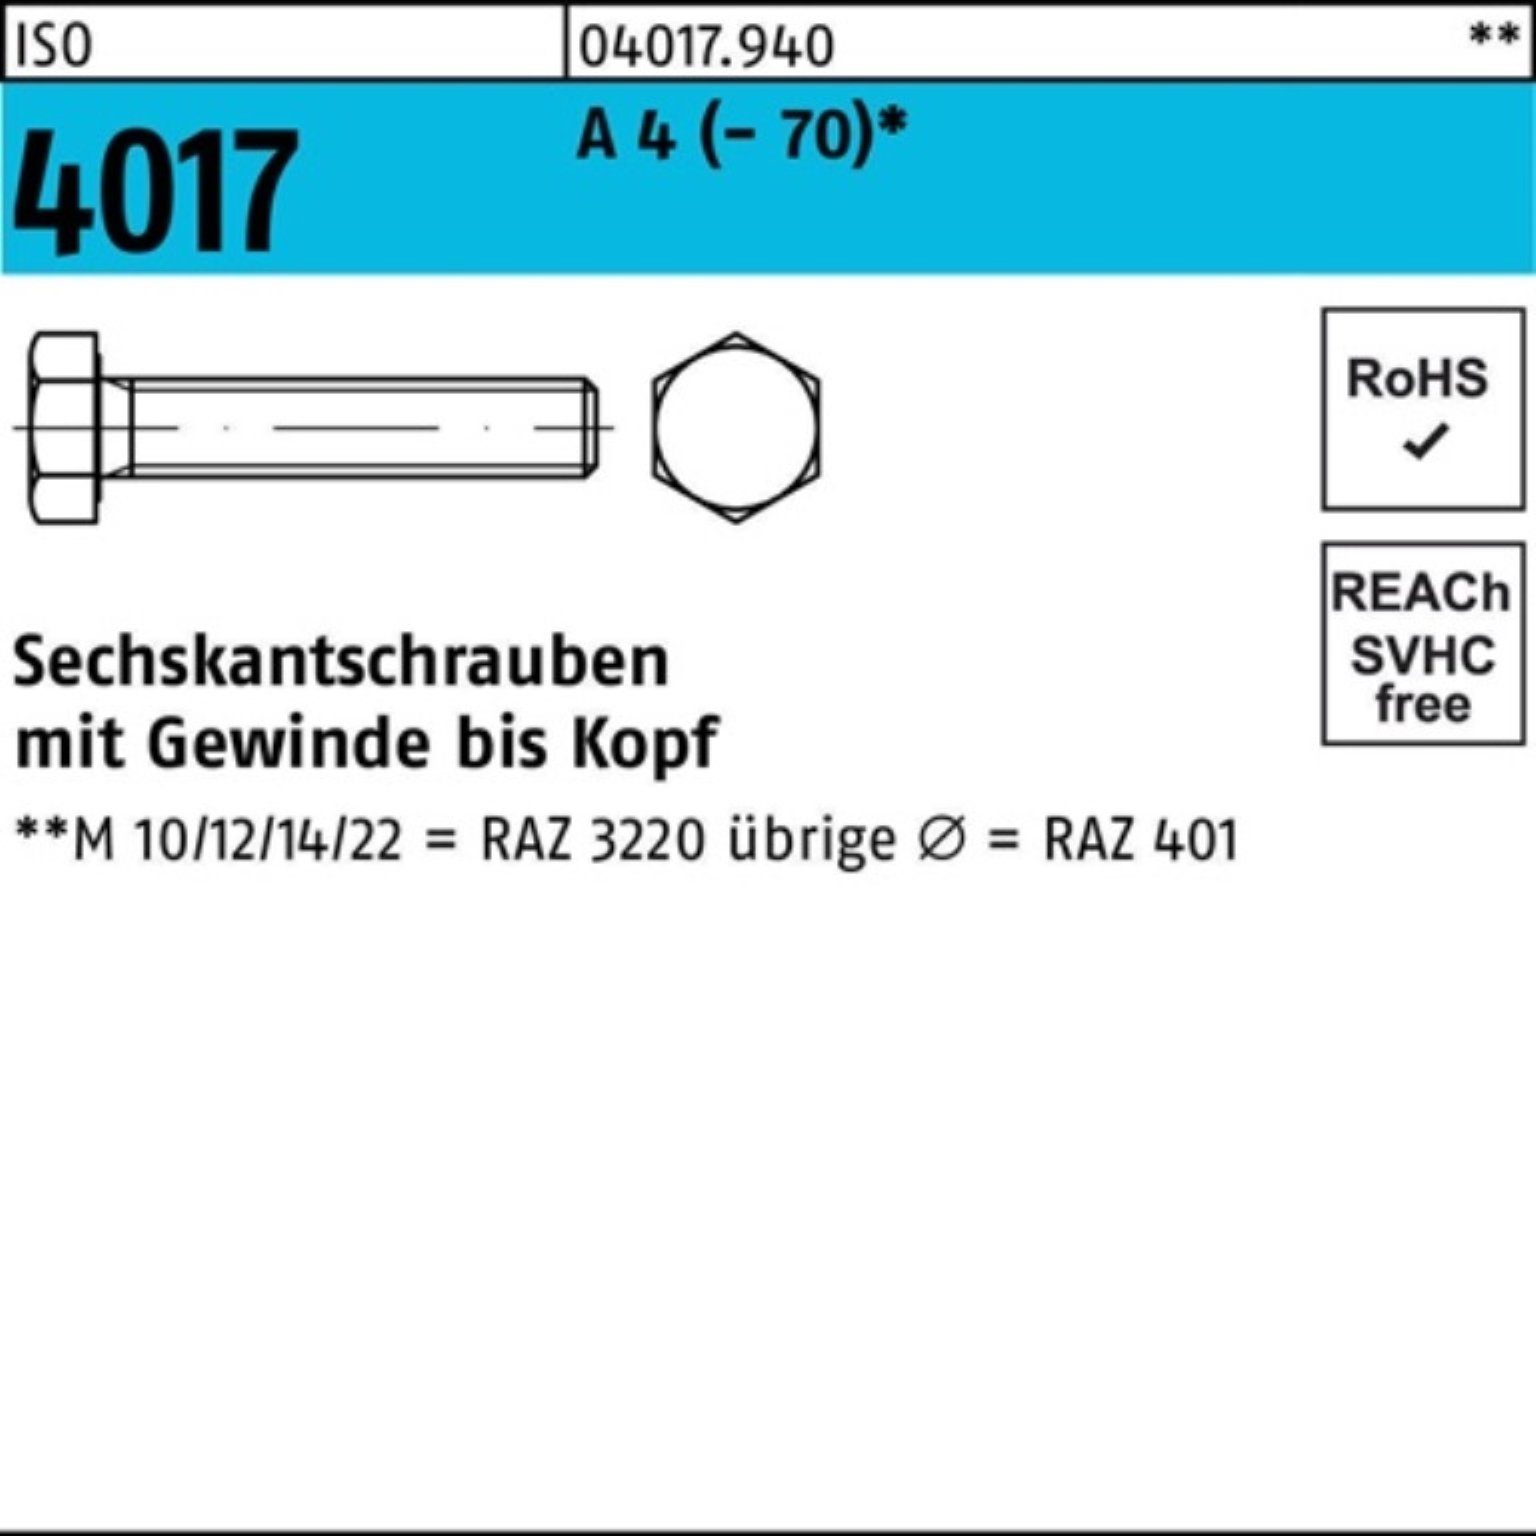 Bufab Sechskantschraube 100er Pack Sechskantschraube ISO 4017 VG M8x 55 A 4 (70) 100 Stück